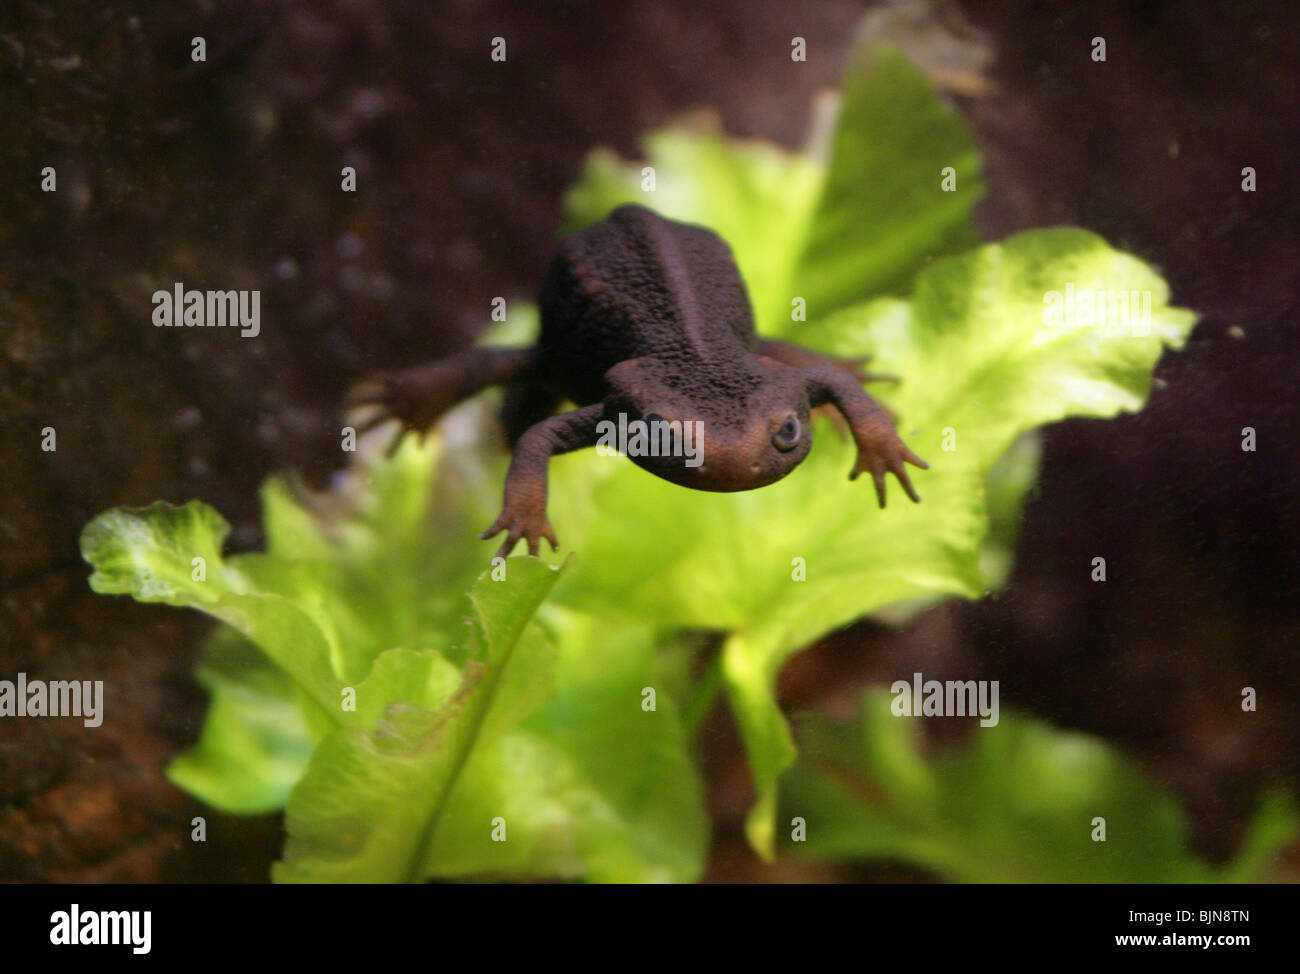 Himalayan Newt, Tylototriton verrucosus, Salamandridae, Himalayas, Asia. Aka Asian or Tibet Salamander or Crocodile Salamander. Stock Photo